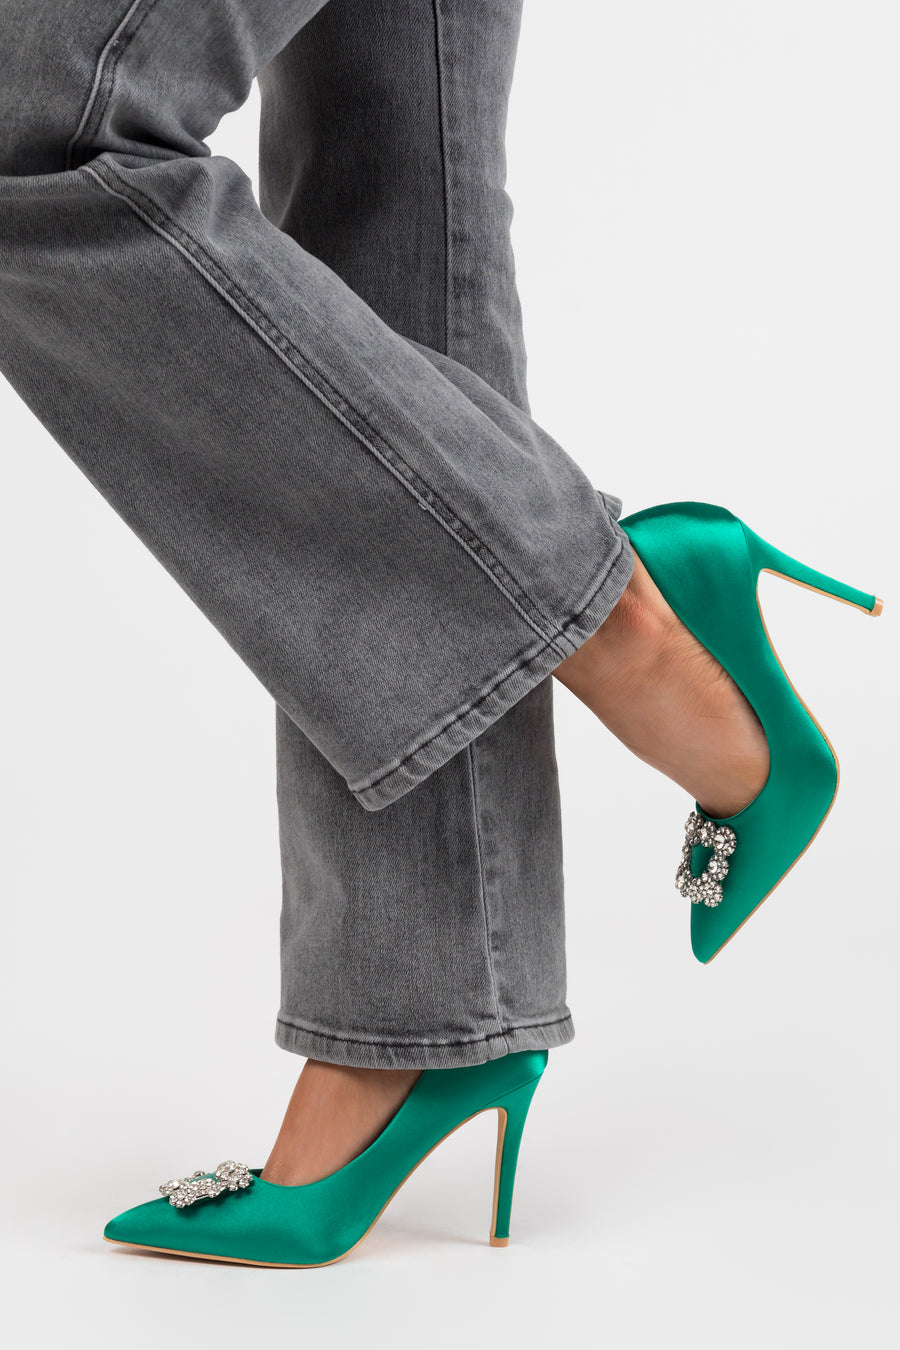 Vibrant Jade Satin Rhinestone Buckle Pointed Toe Heels